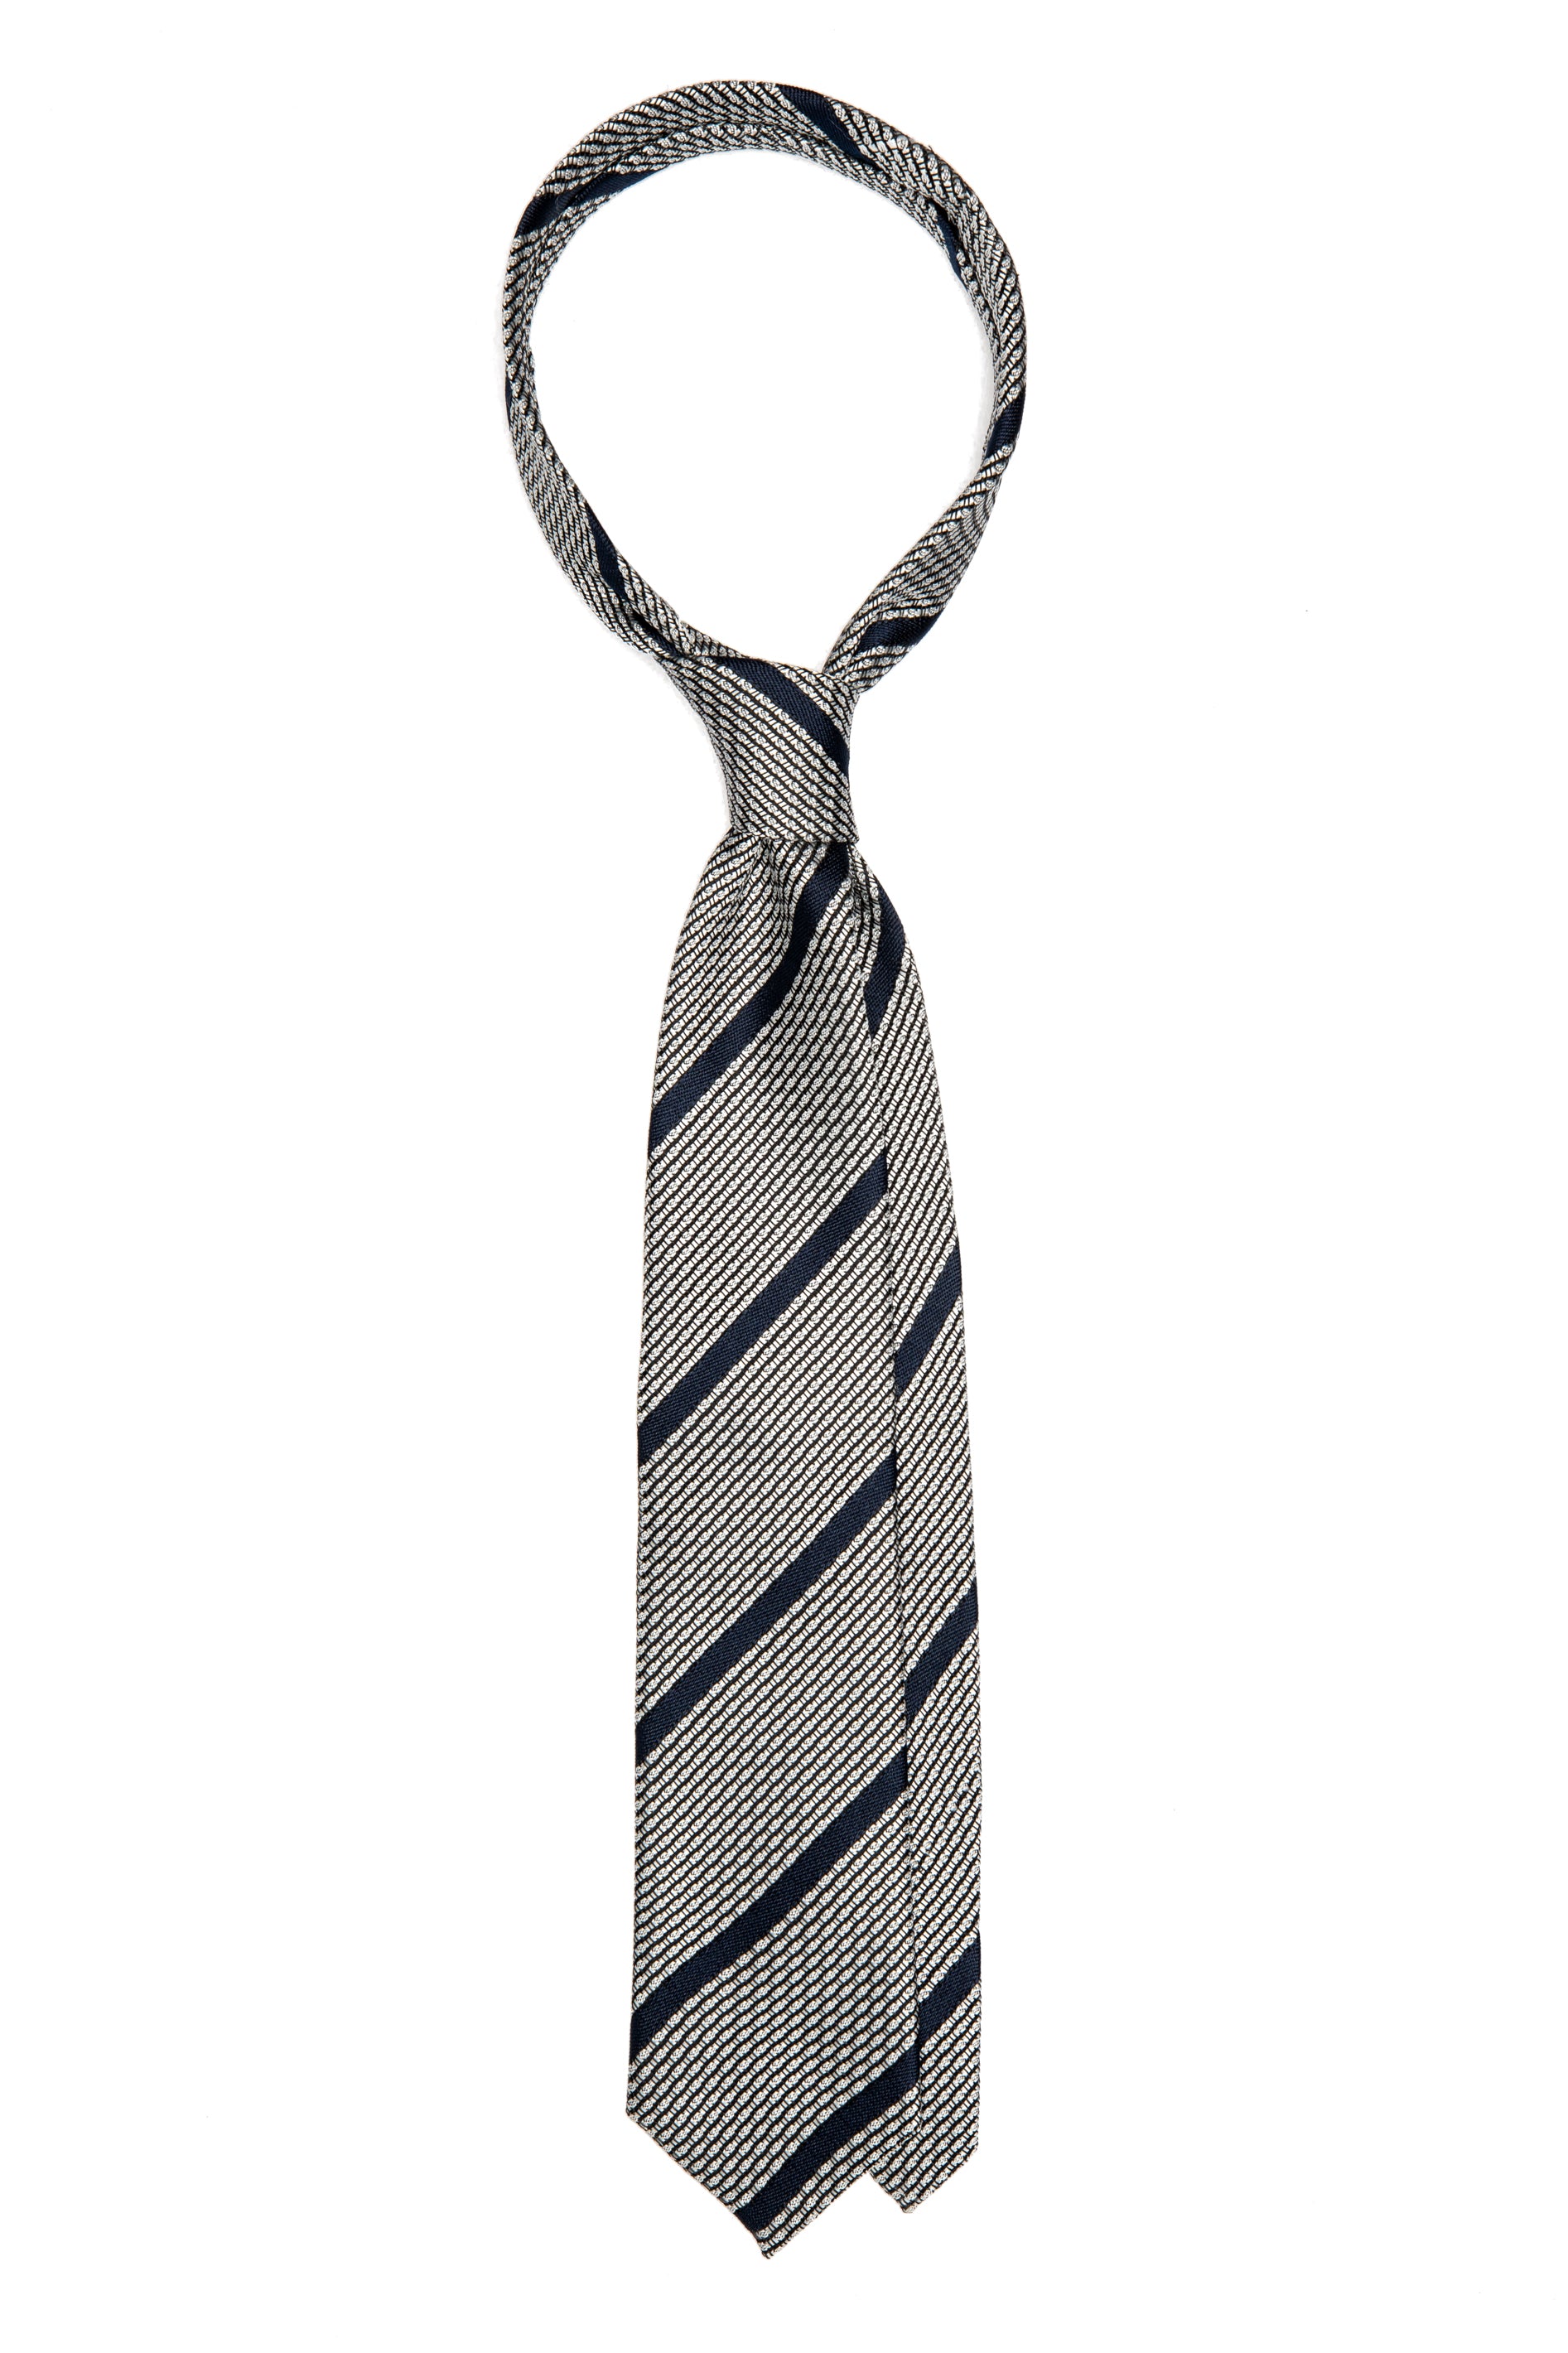 Cravatta in seta argento con righe